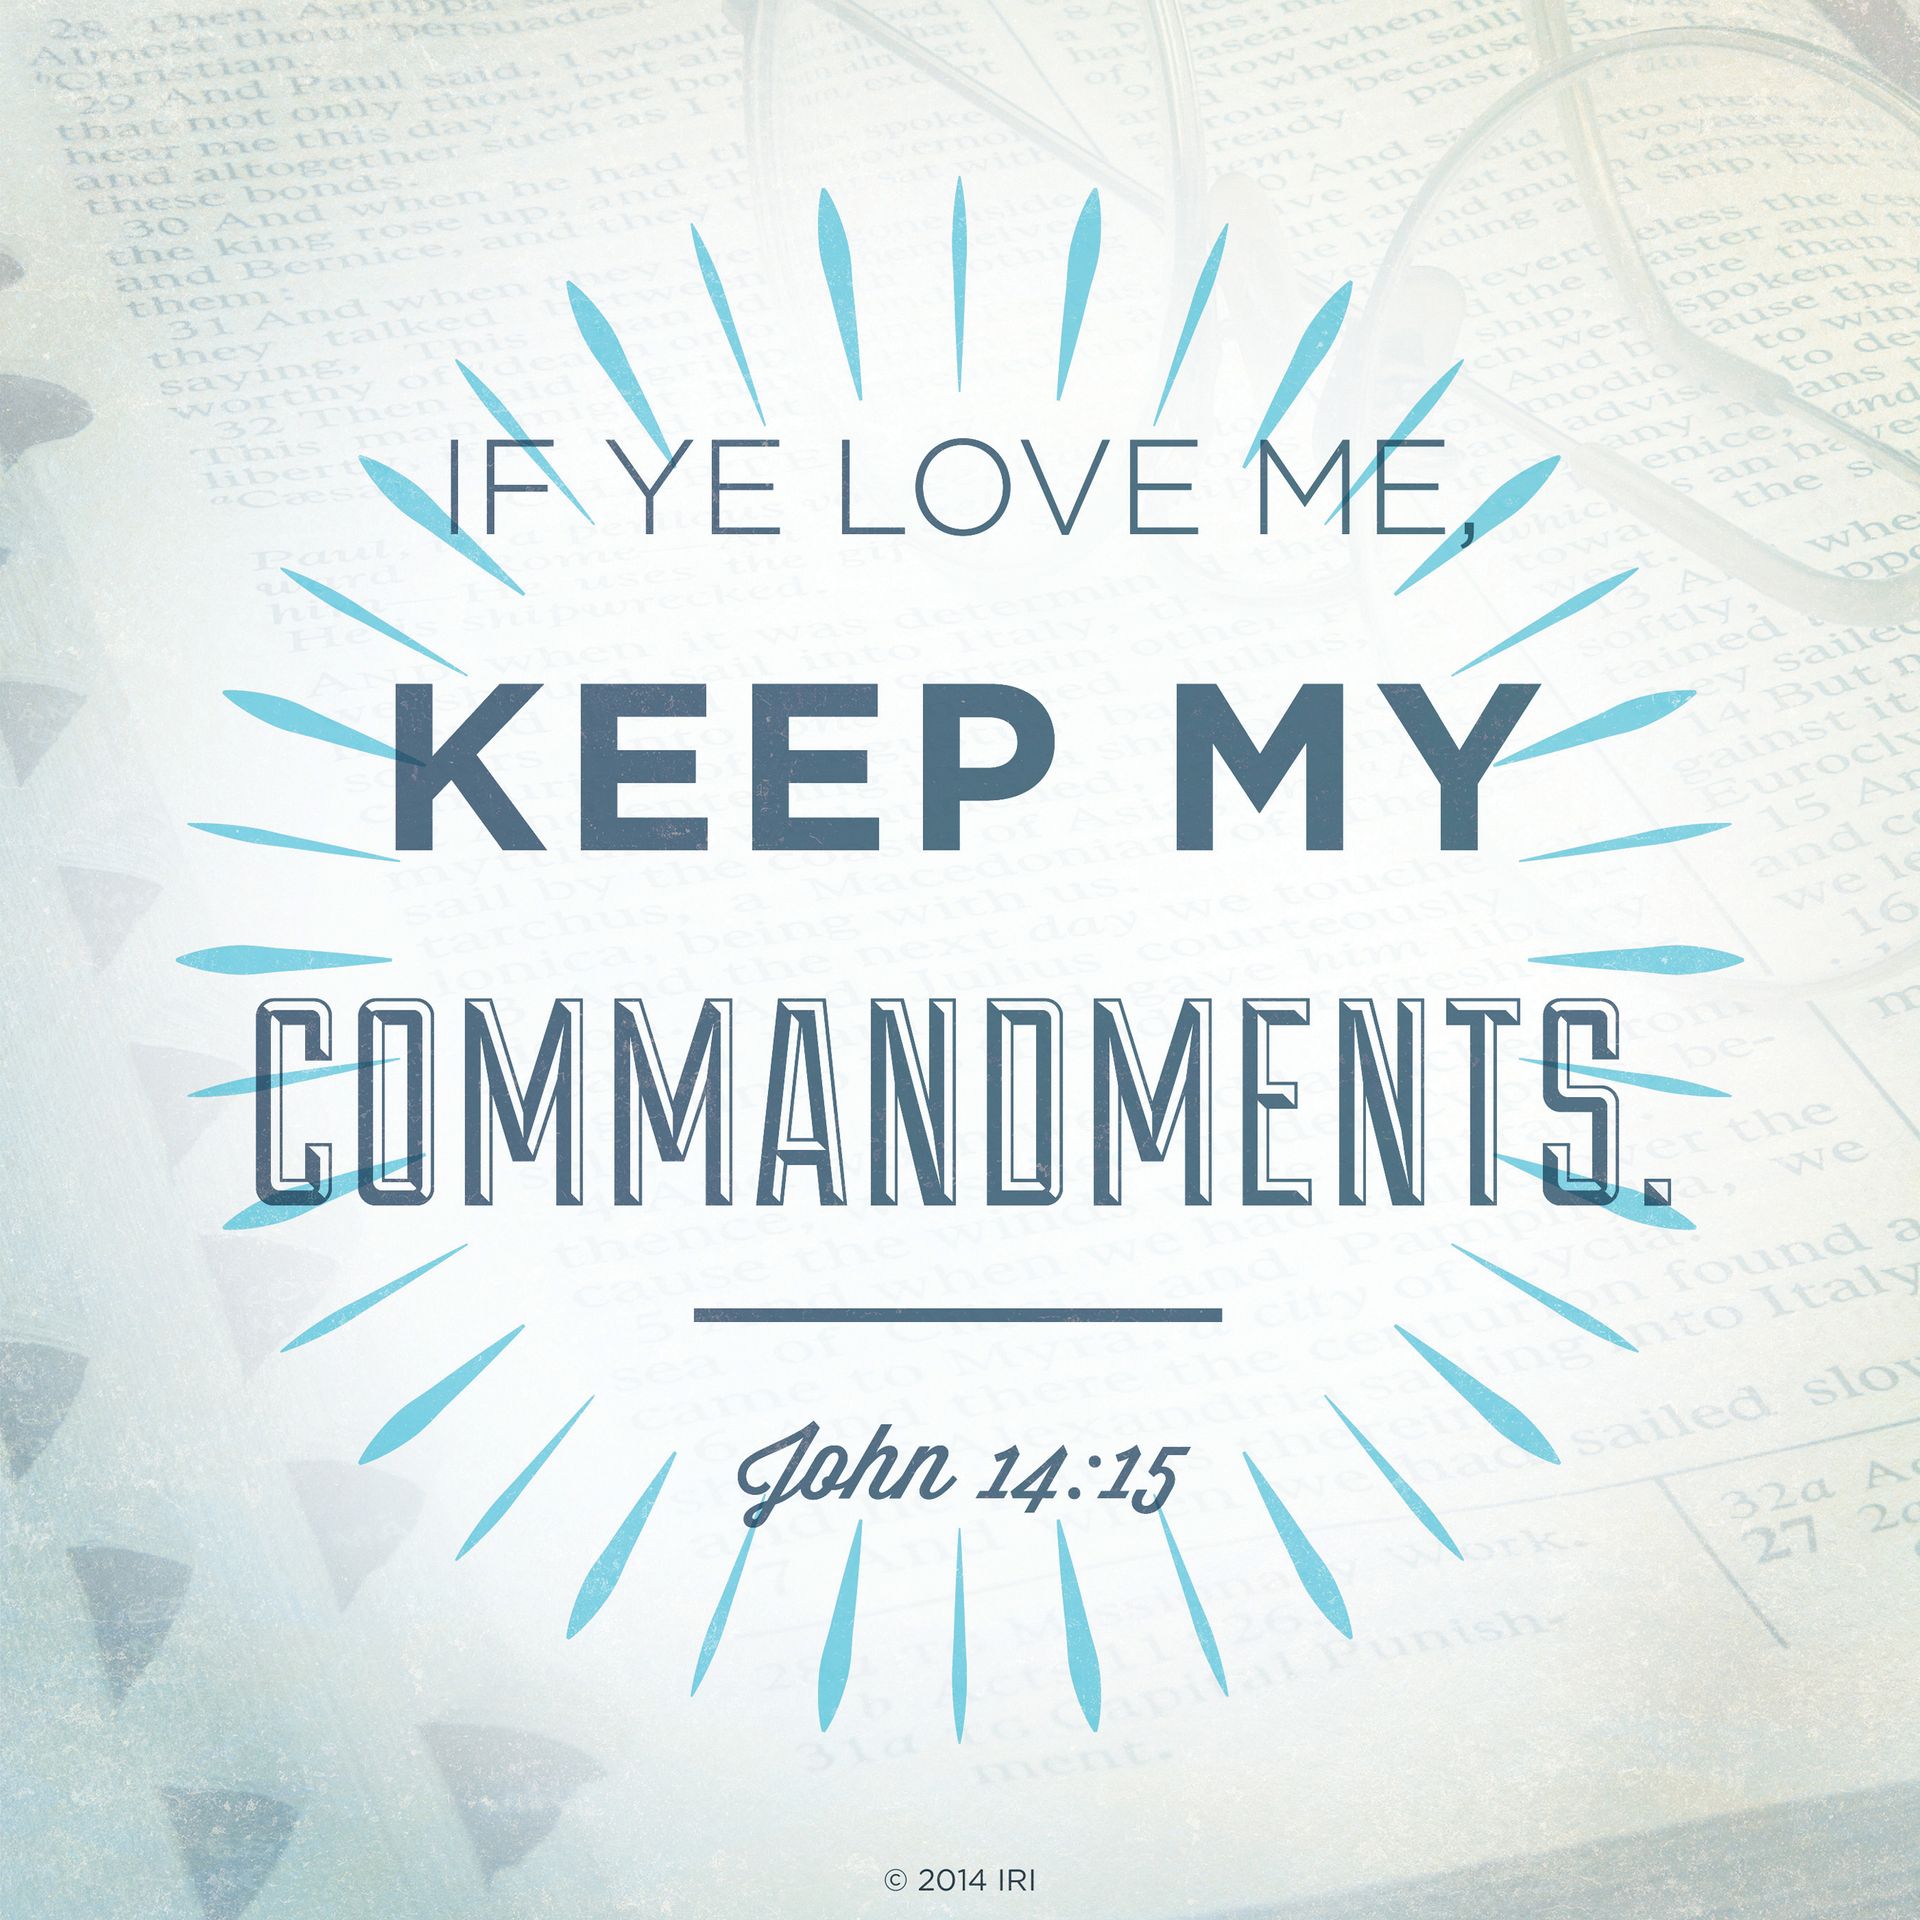 “If ye love me, keep my commandments.”—John 14:15